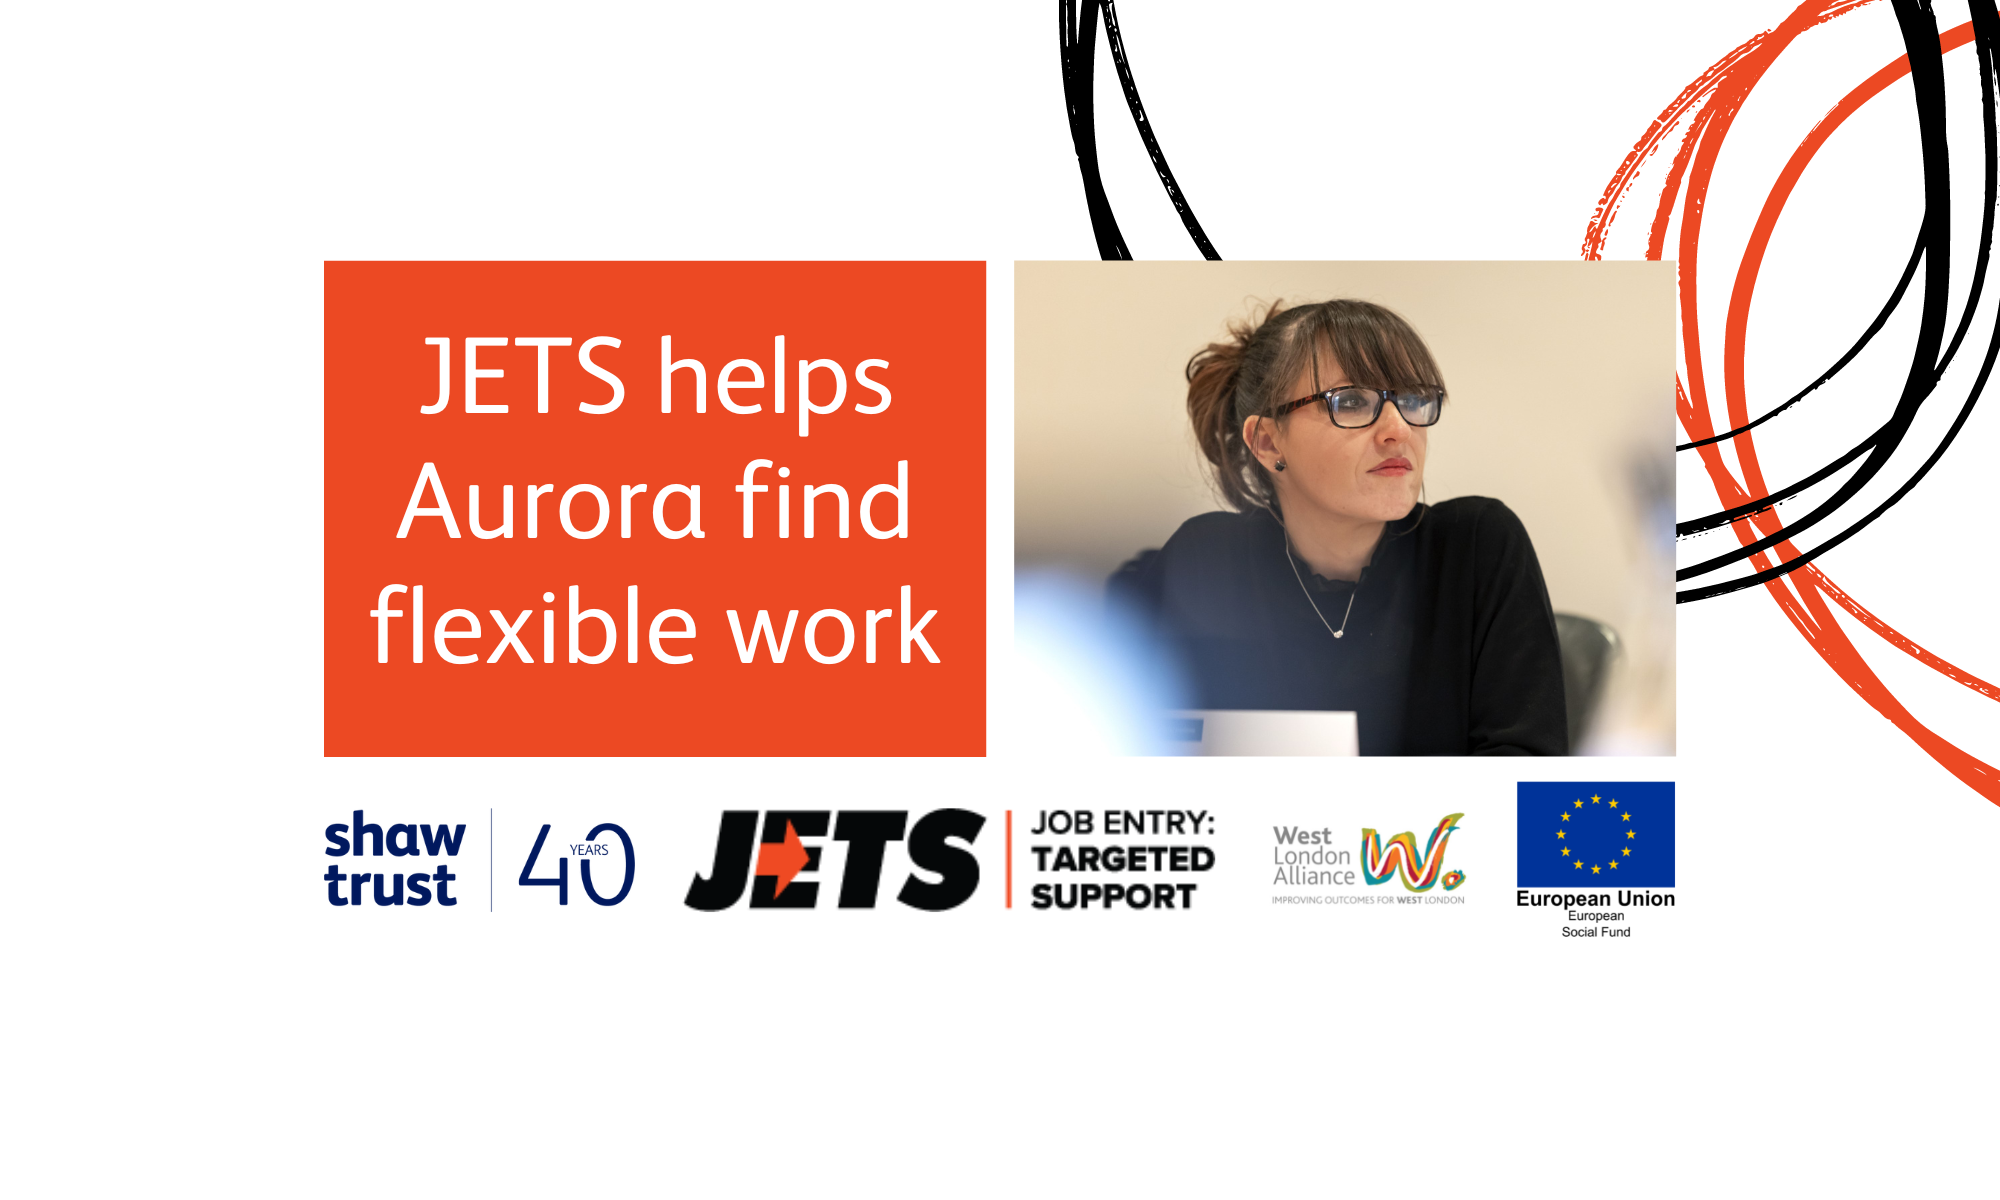 JETS helps Aurora find flexible work